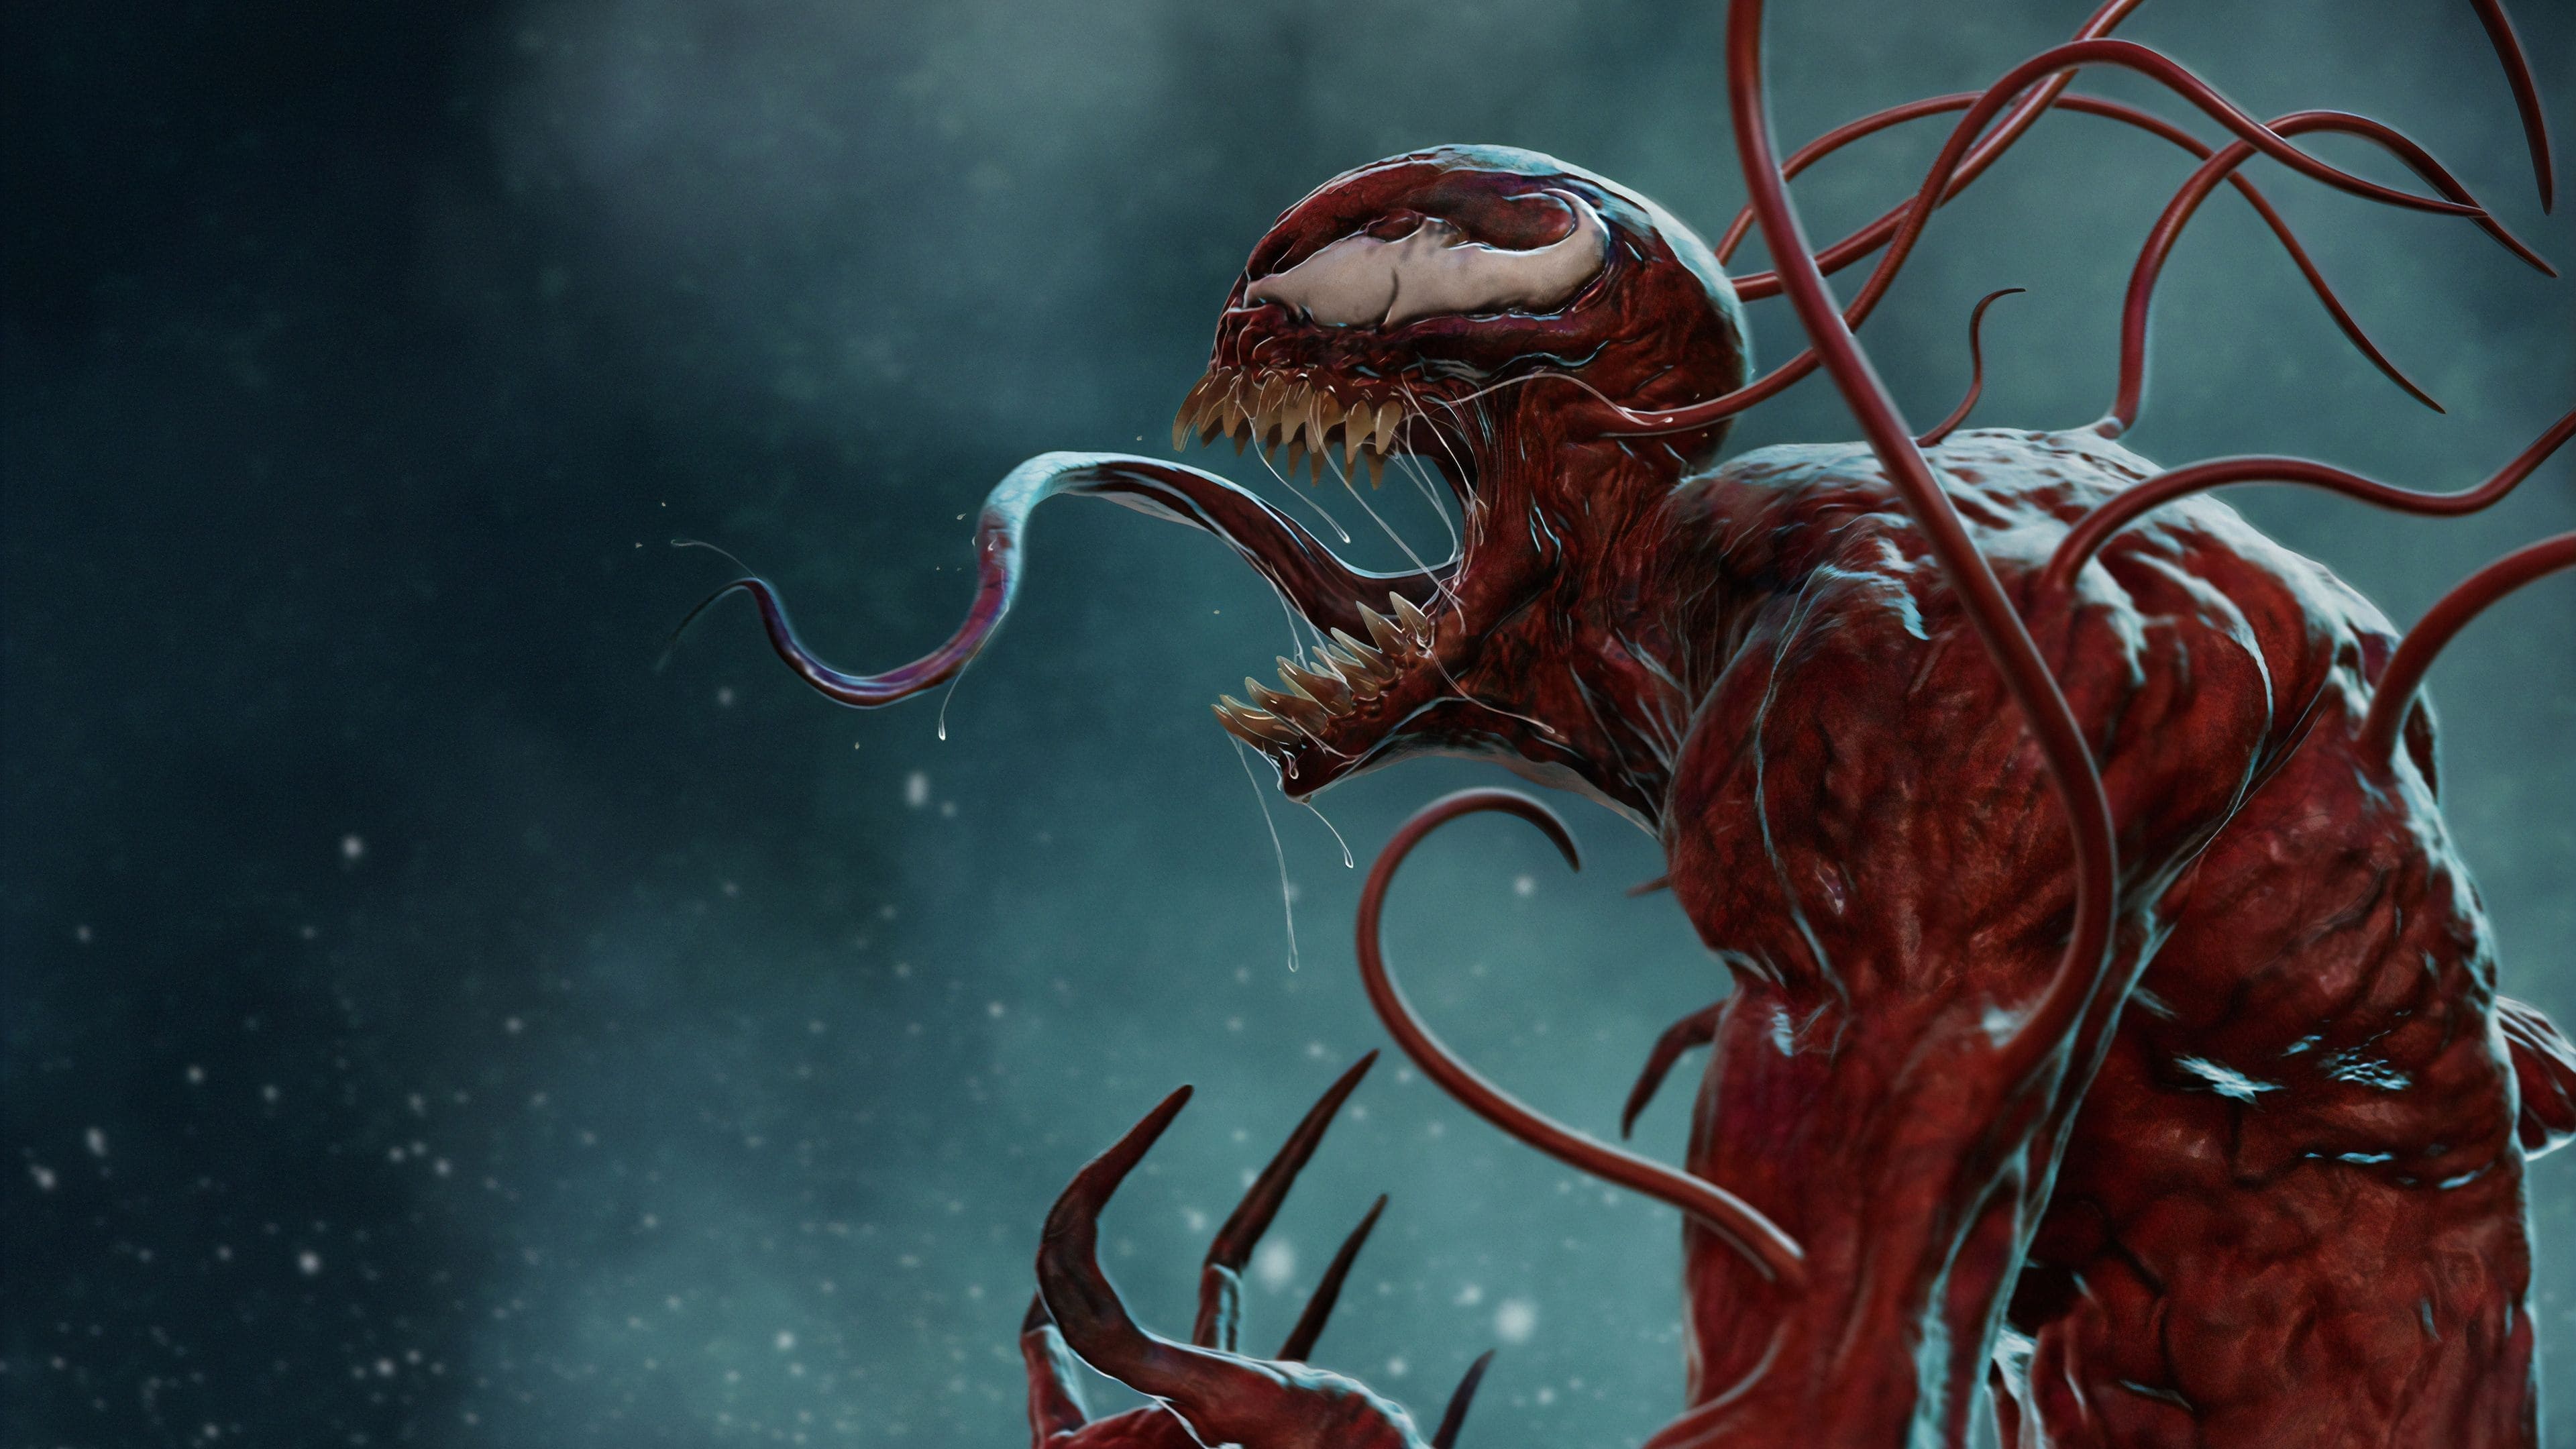 Venom - La furia di Carnage (2021)